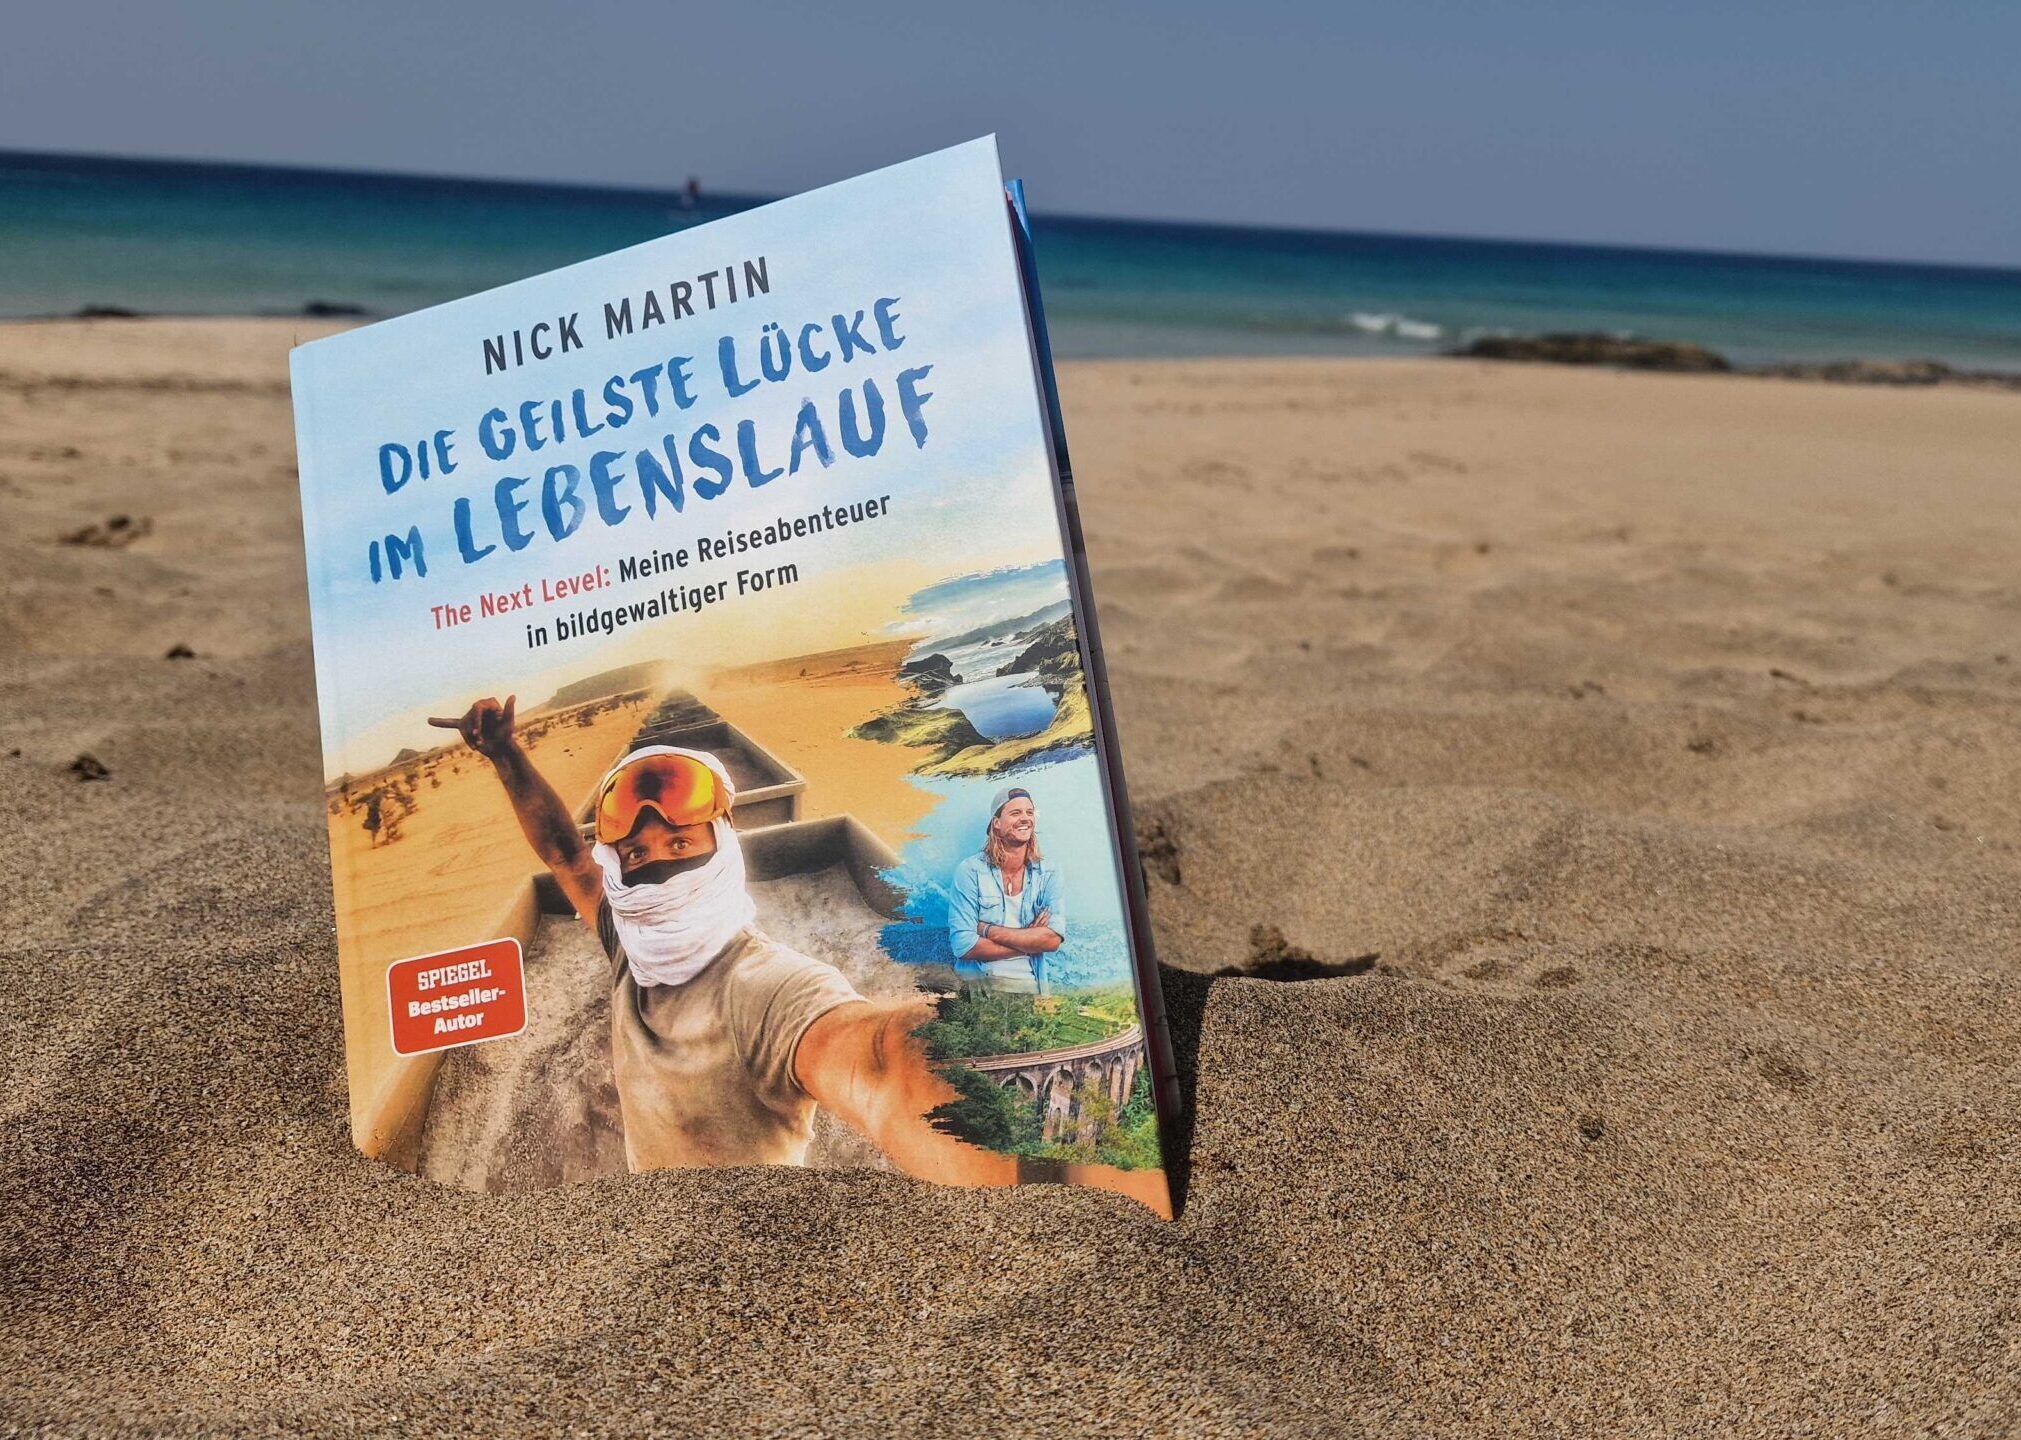 Das neue Buch "The Next Level" am Strand in Fuerteventura